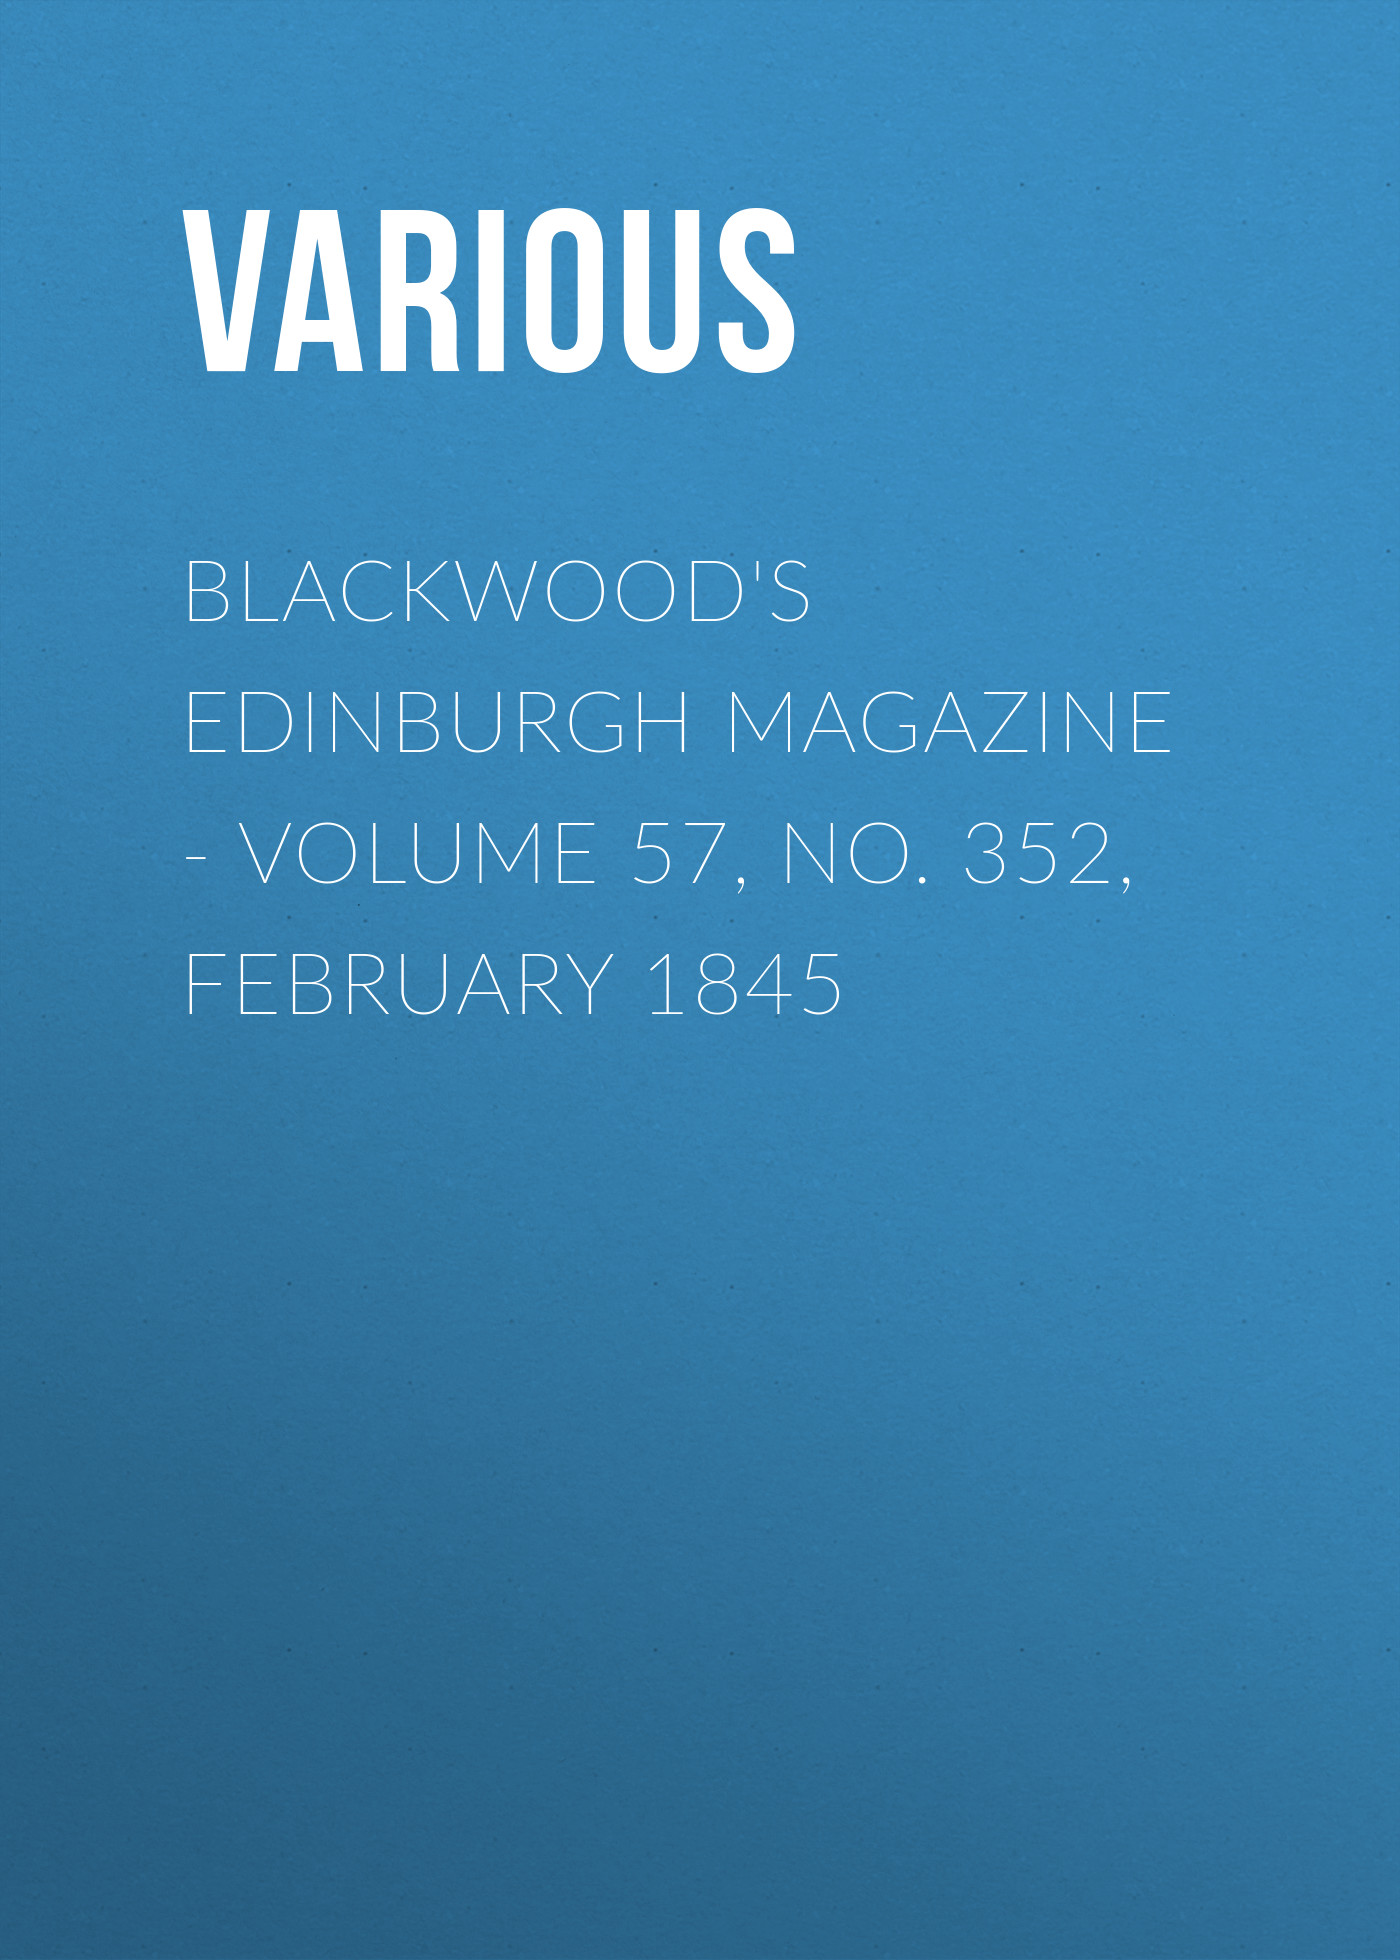 Книга Blackwood's Edinburgh Magazine – Volume 57, No. 352, February 1845 из серии , созданная  Various, может относится к жанру Журналы, Зарубежная образовательная литература, Книги о Путешествиях. Стоимость электронной книги Blackwood's Edinburgh Magazine – Volume 57, No. 352, February 1845 с идентификатором 25570903 составляет 0 руб.